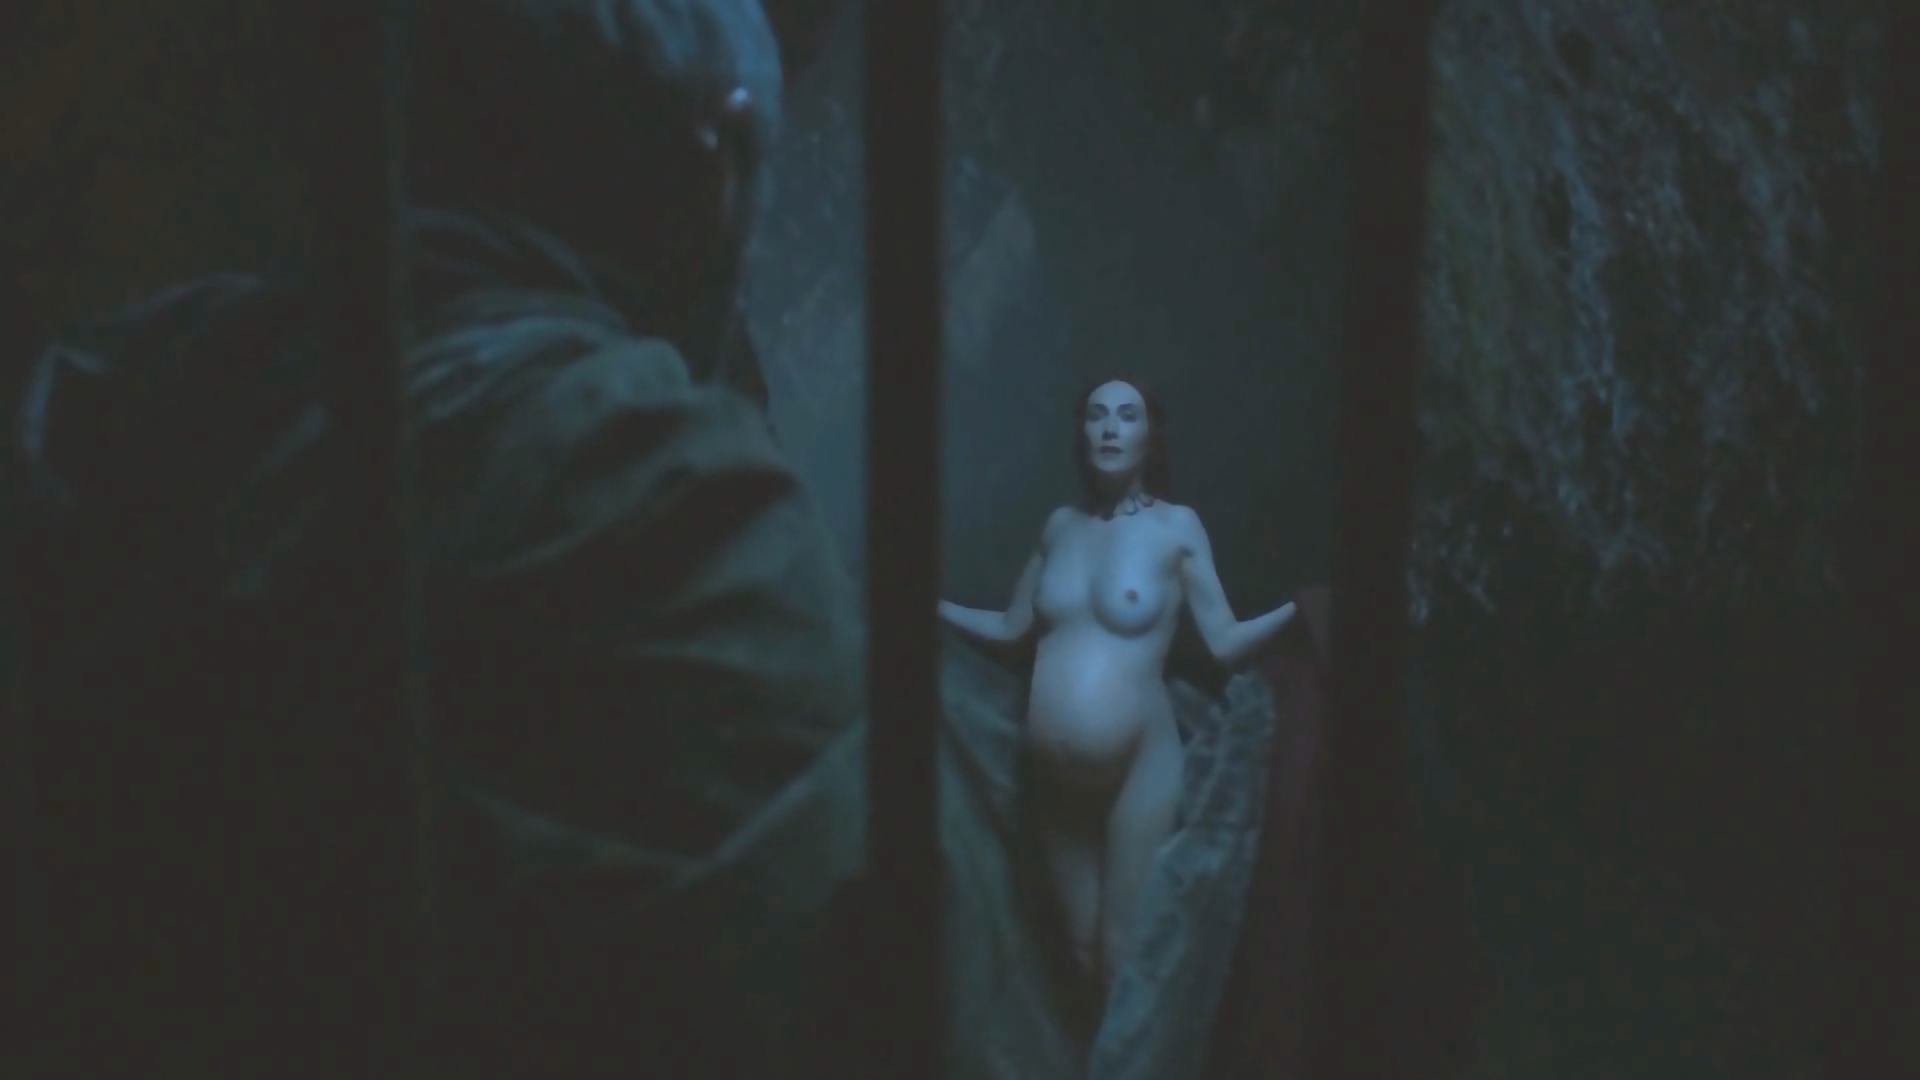 Carice Van Houten Nude In Game Of Thrones Thefappening Link